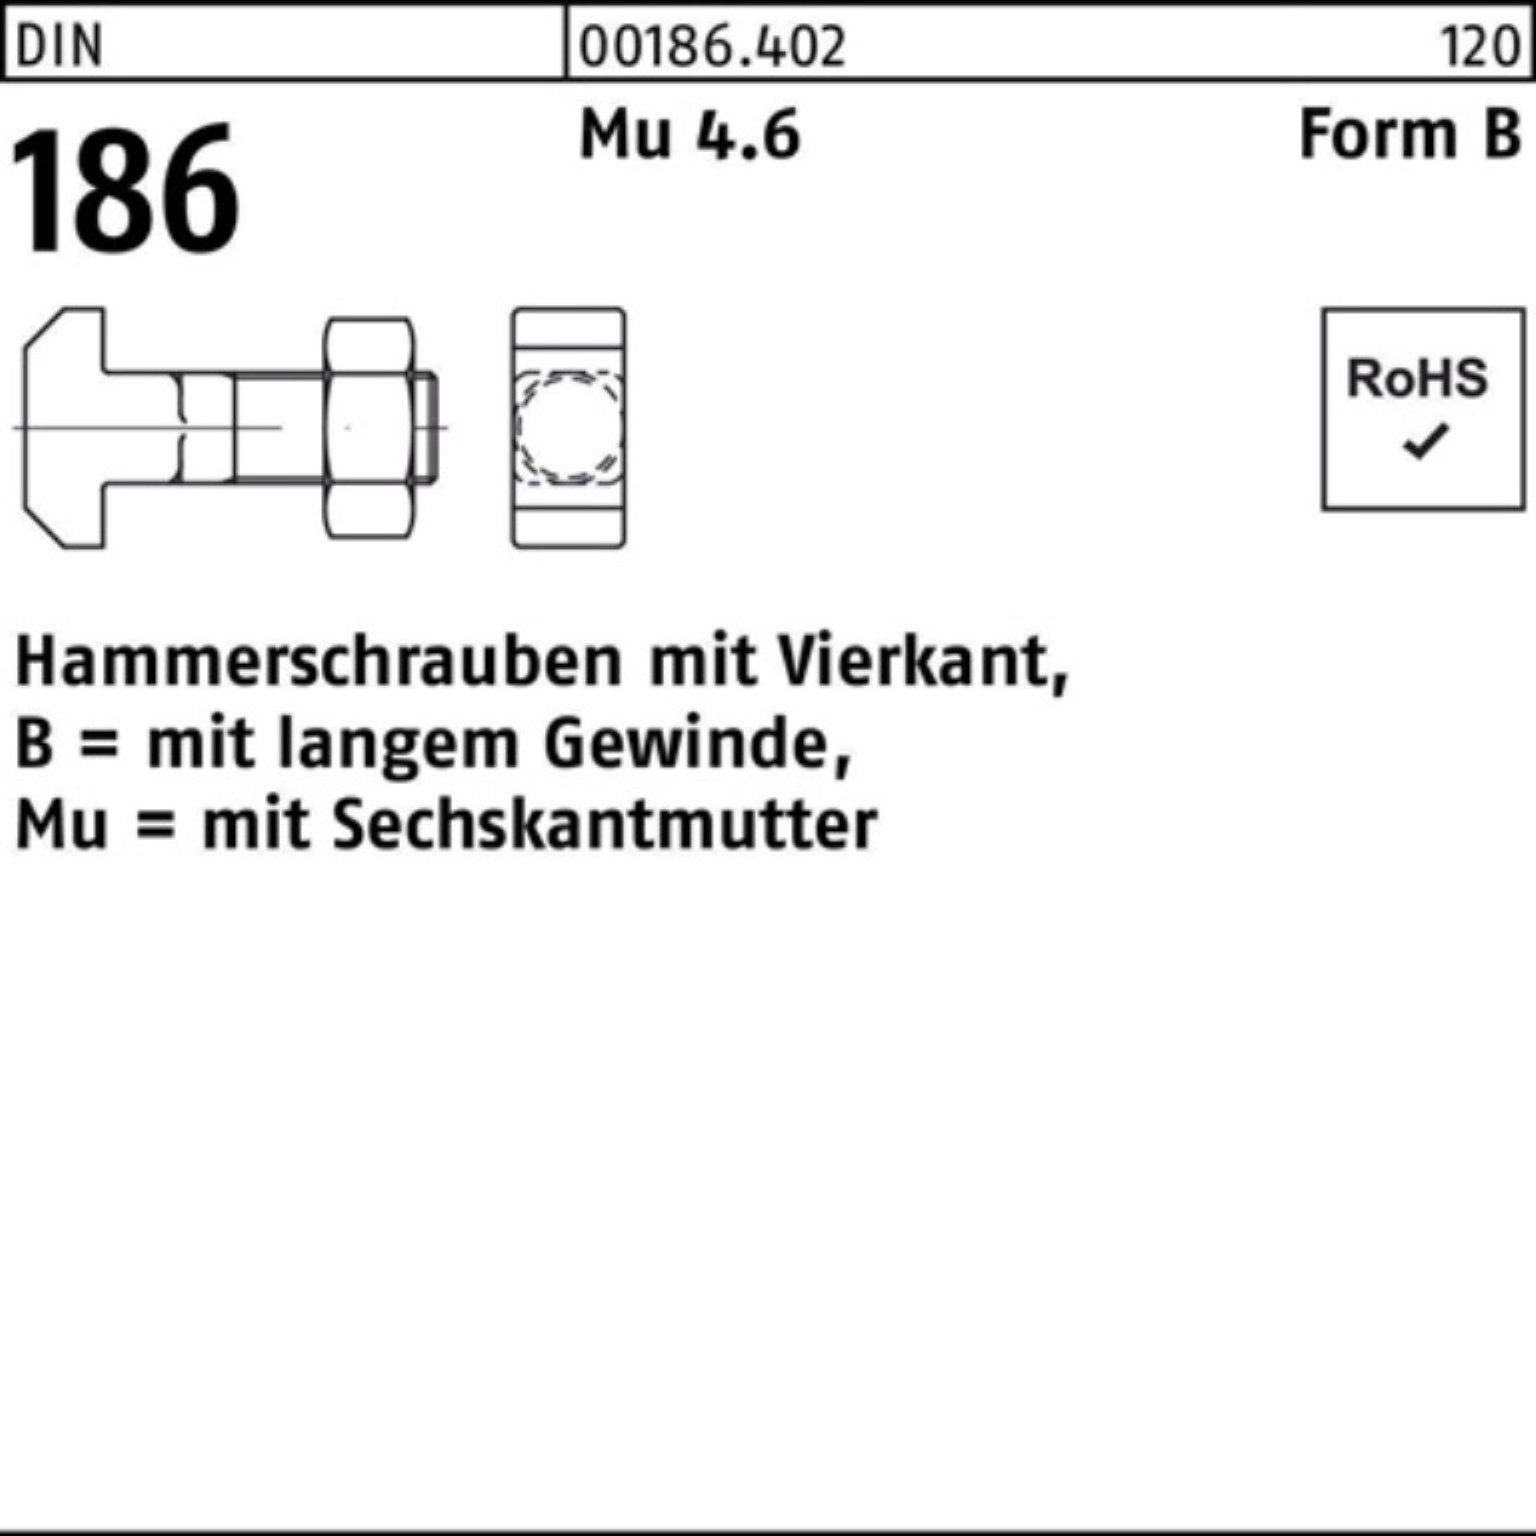 160 186 Vierkant Reyher Schraube 20x DIN Pack Hammerschraube BM 100er 6-ktmutter FormB